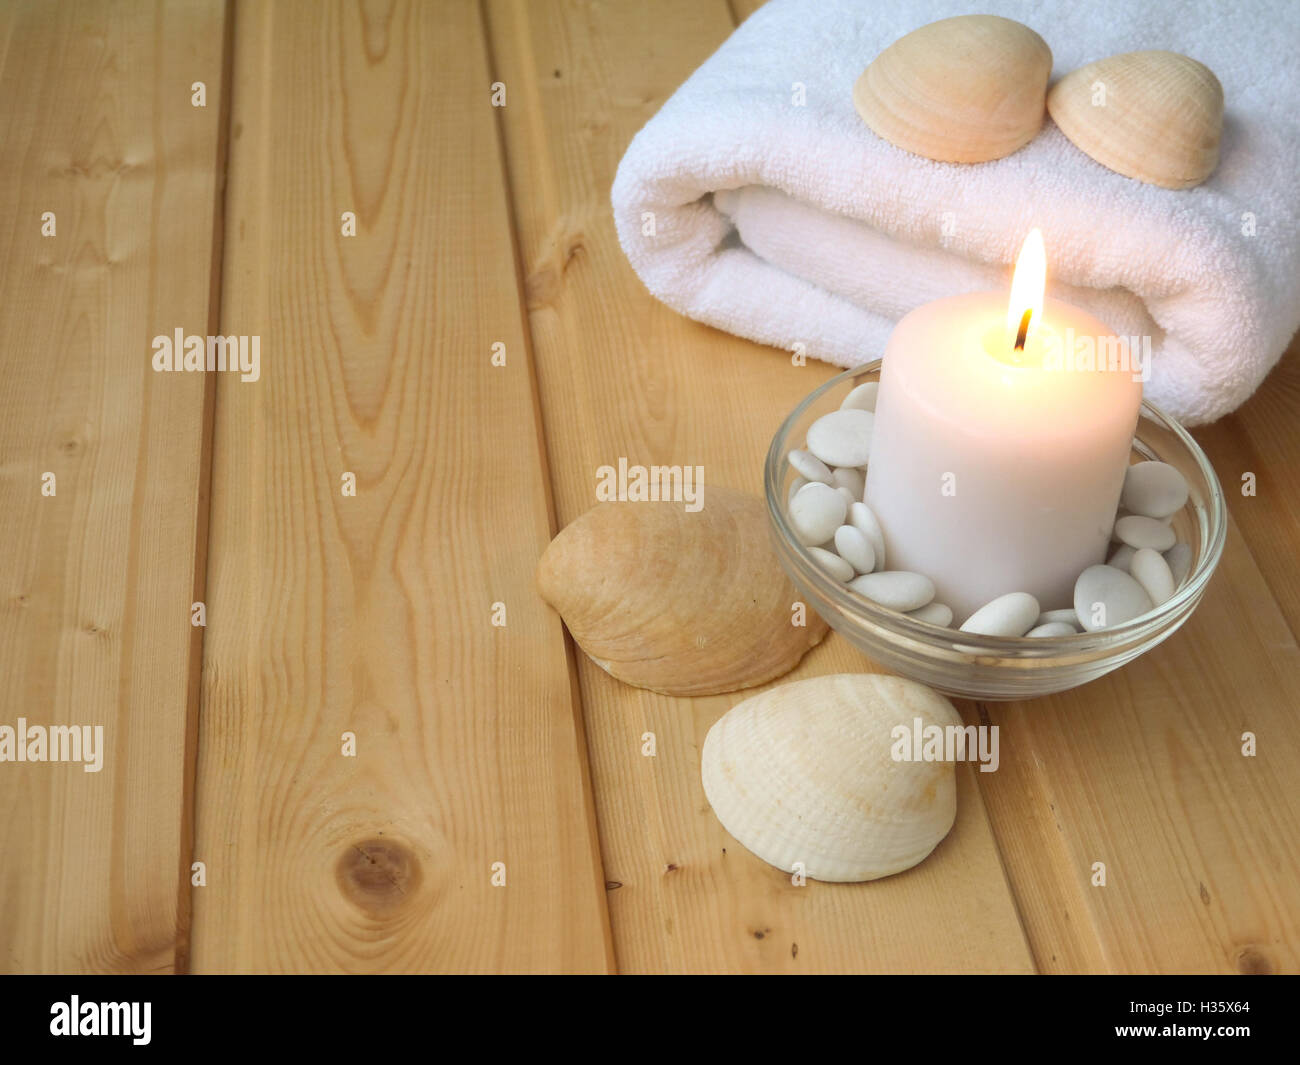 Handtuch, Muscheln und brennende Kerze auf dem hölzernen Hintergrund Stockfoto